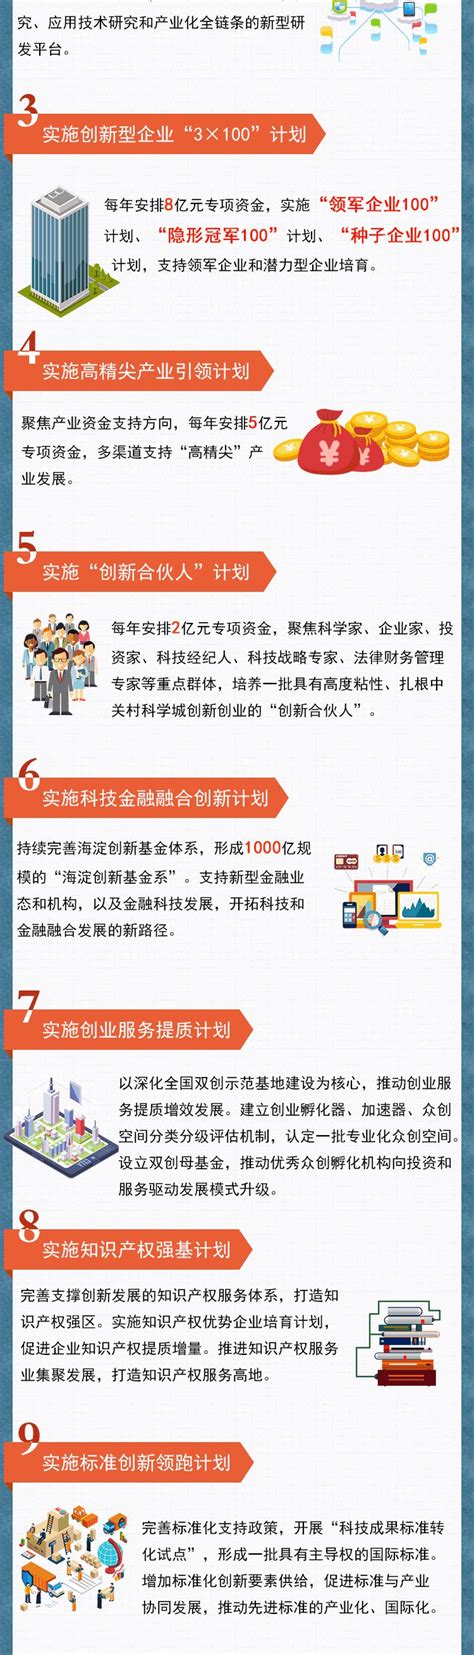 便民：10月起到海淀注册登记企业将"全程电子化" 社区资讯 海淀北部便民平台